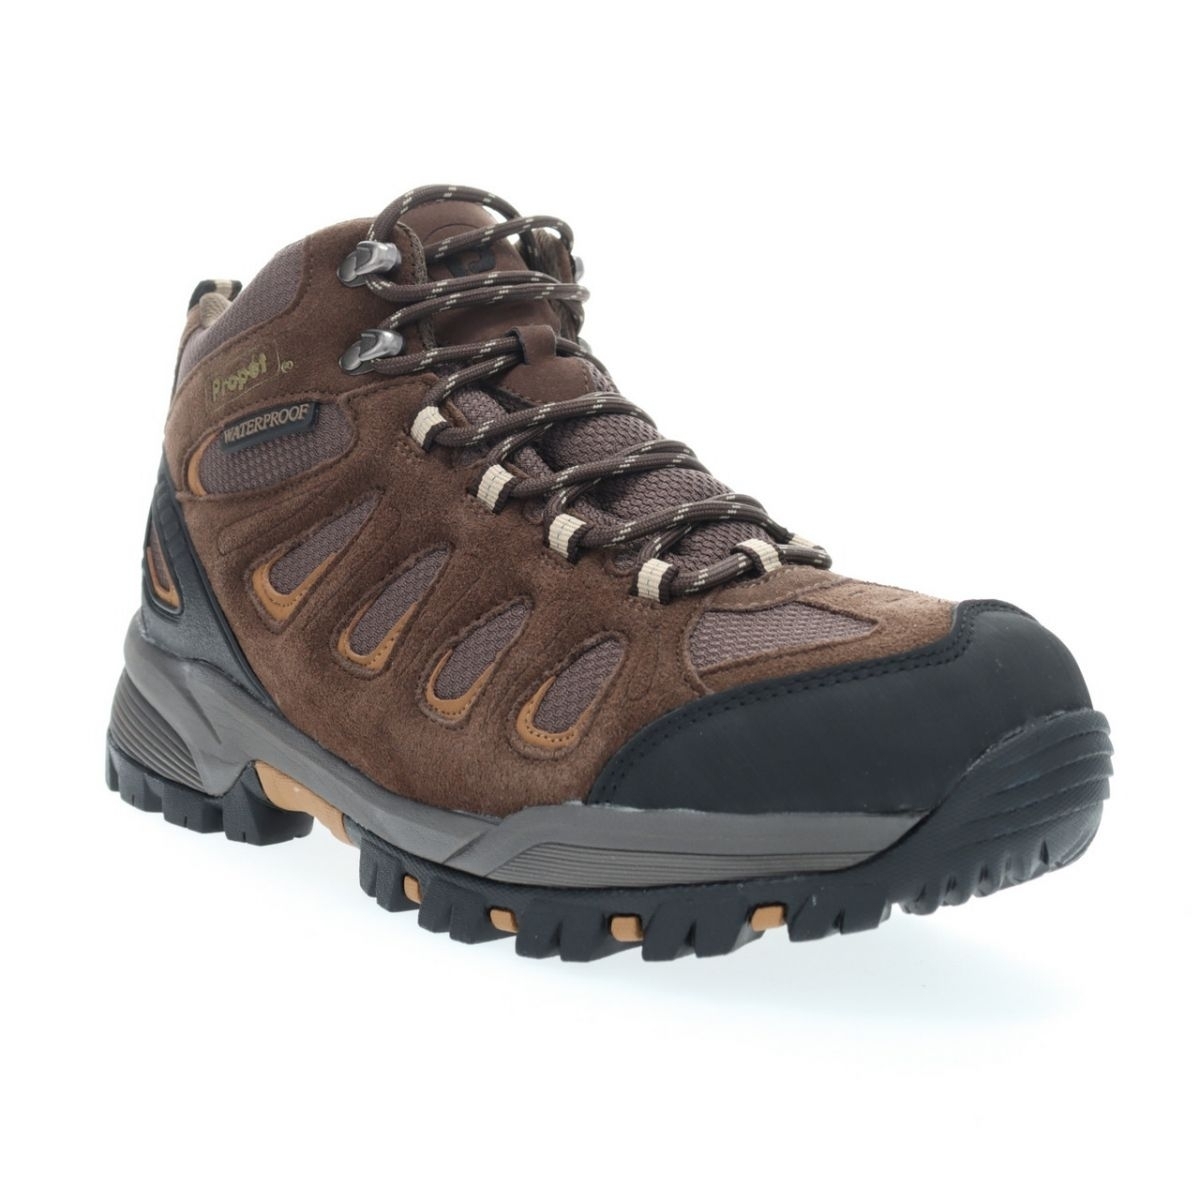 Propet Men's Ridge Walker Hiking Boot Brown - M3599BR 8 XX US Men BROWN - BROWN, 9.5 3X-Wide